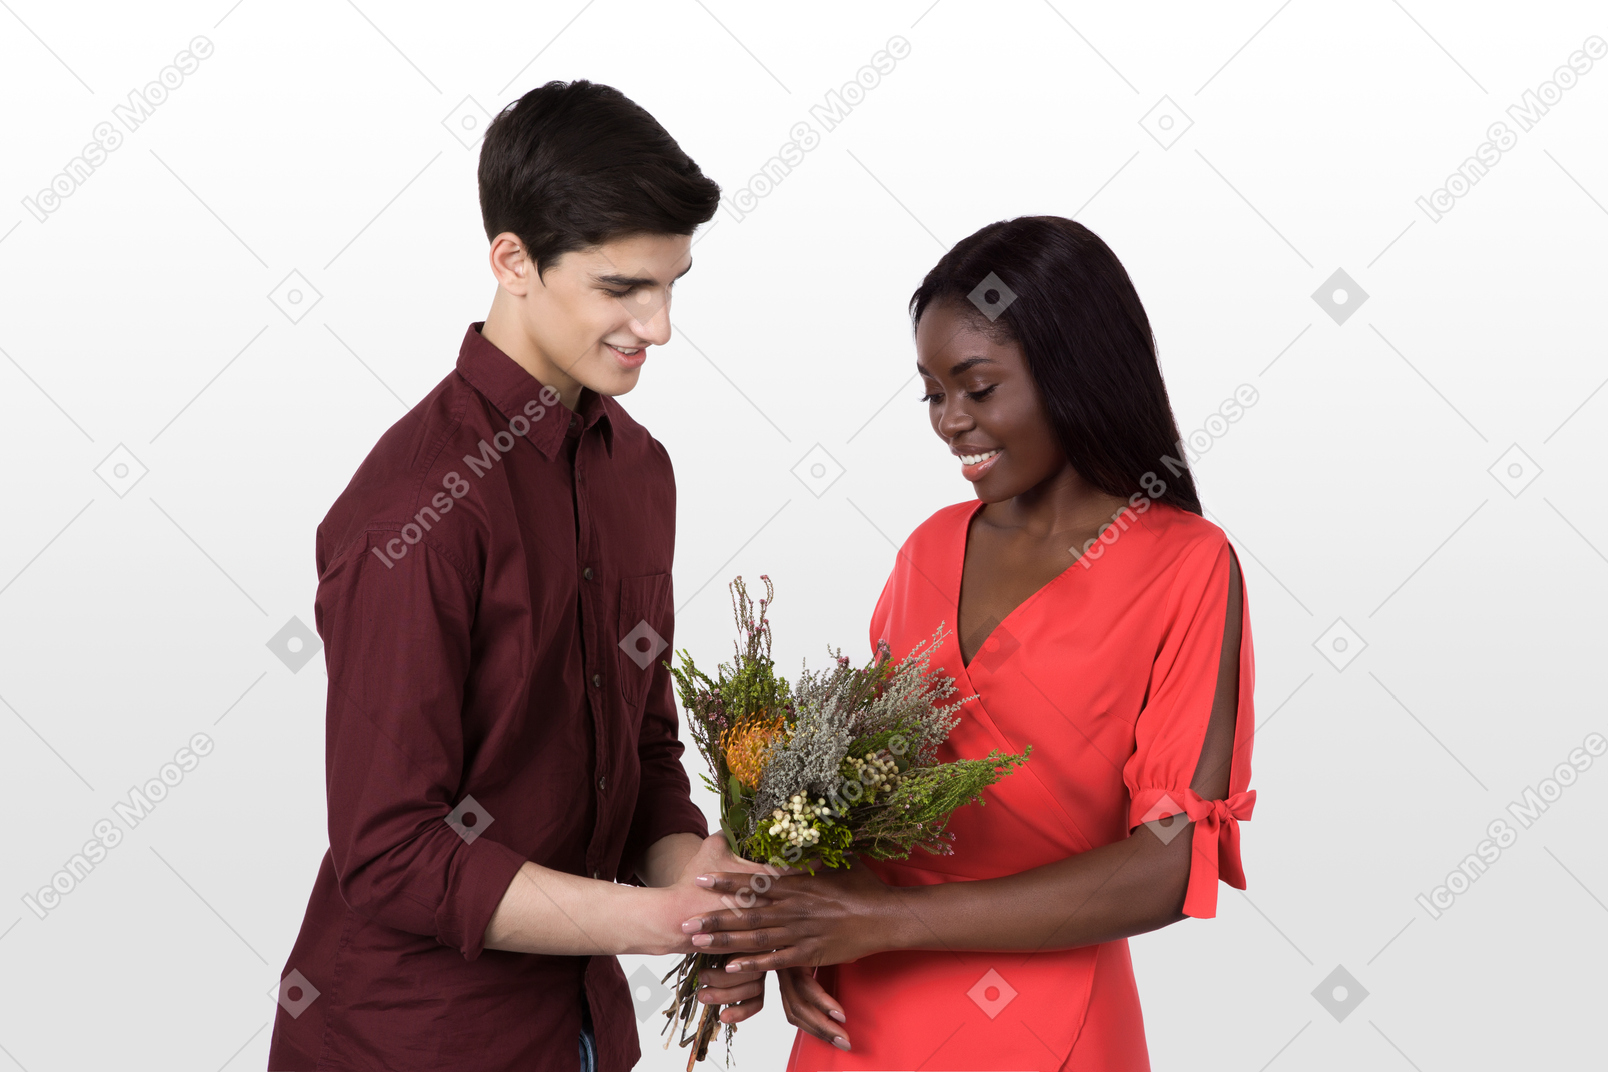 Permettimi di darti questo bouquet, amore mio